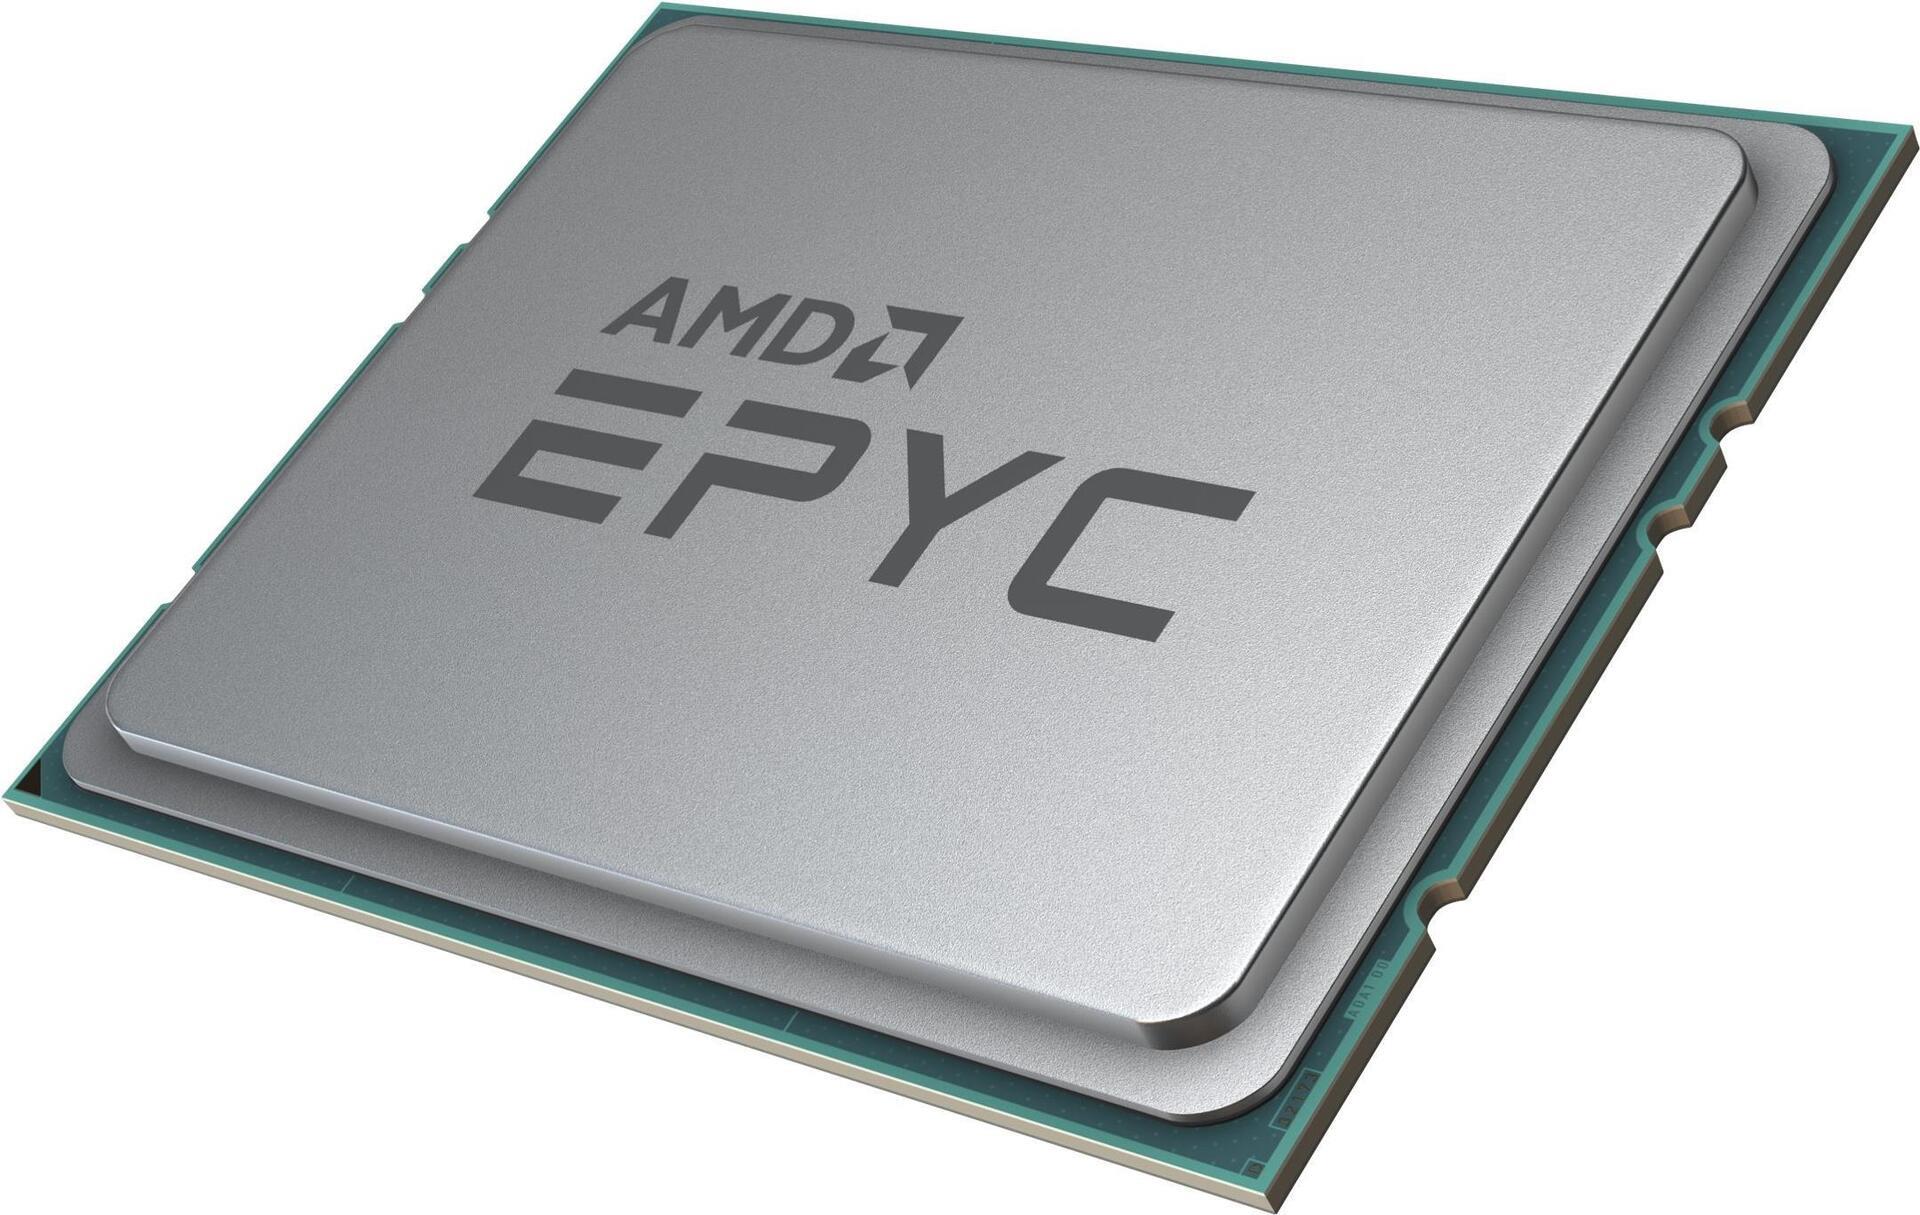 AMD EPYC™ 7252, S SP3, 7nm, Infinity/Zen 2, 8 Core, 16 Thread, 3.1GHz, 3.2GHz Turbo, 64MB, 120W, CPU, OEM